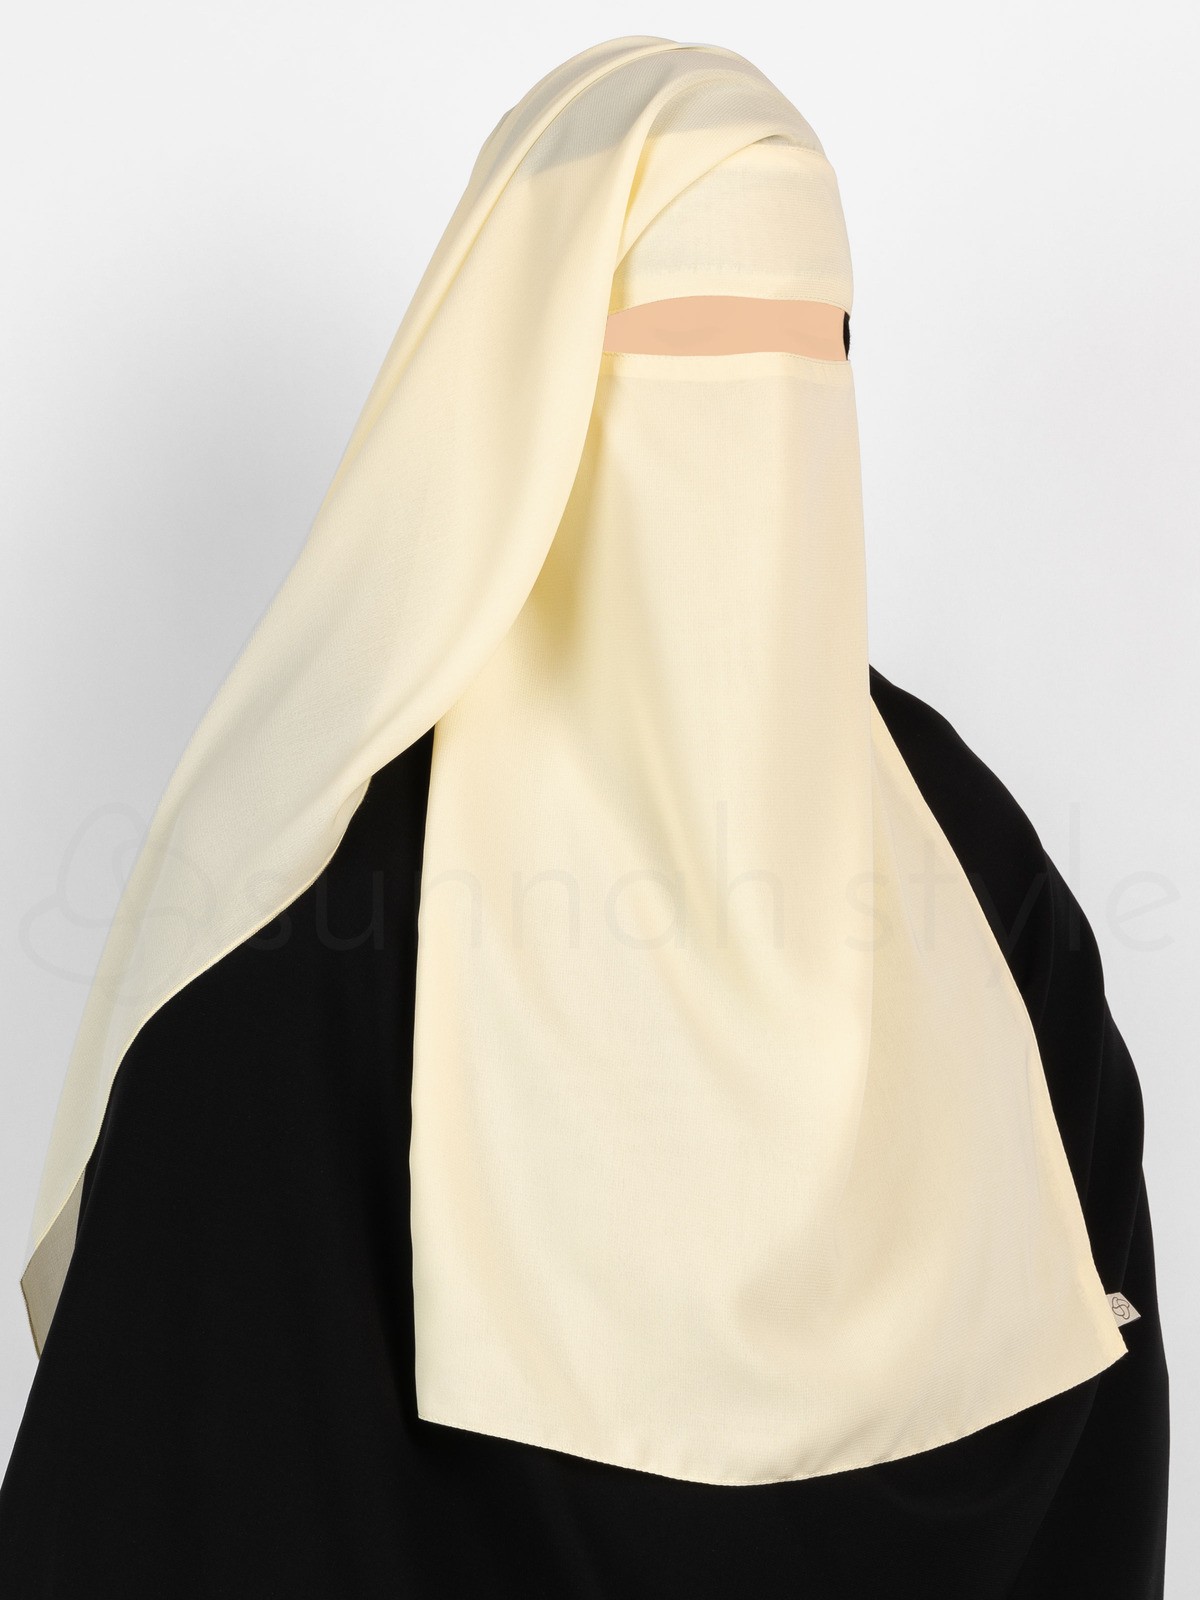 Sunnah Style - Narrow No-Pinch Two Layer Niqab (Vanilla Cream)